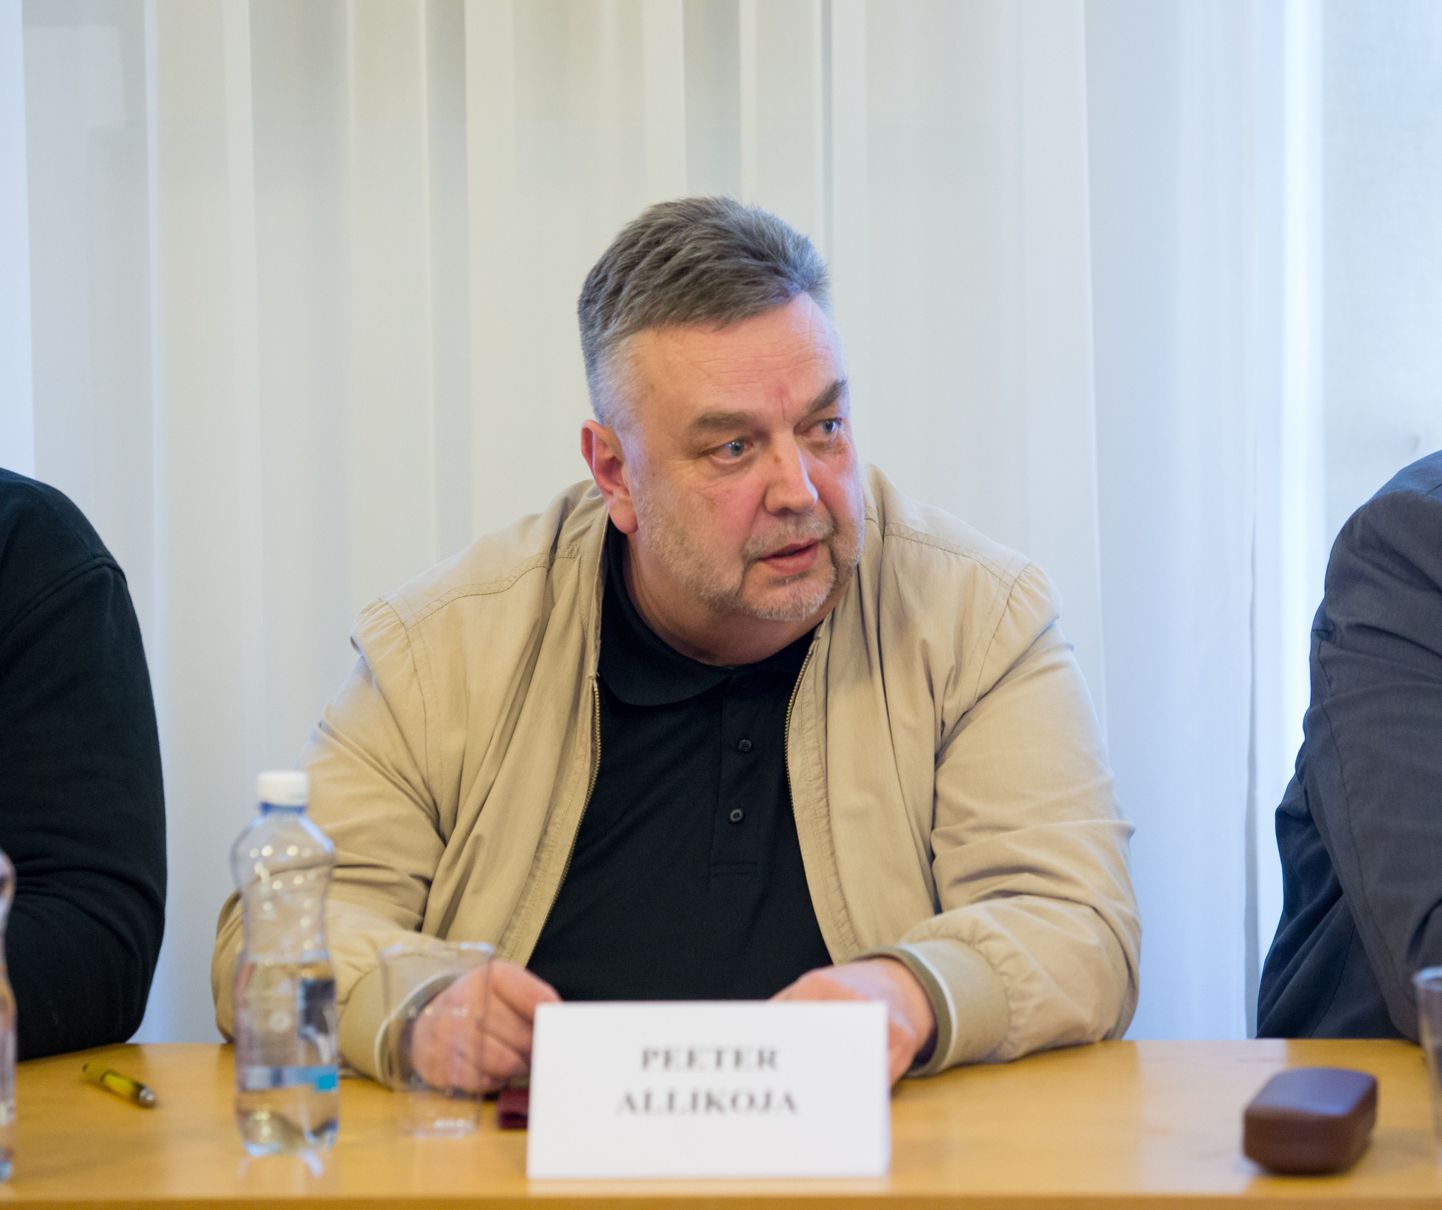 Seni osales Peeter Allikoja Viljandi juhtimises volikogu liikmena.